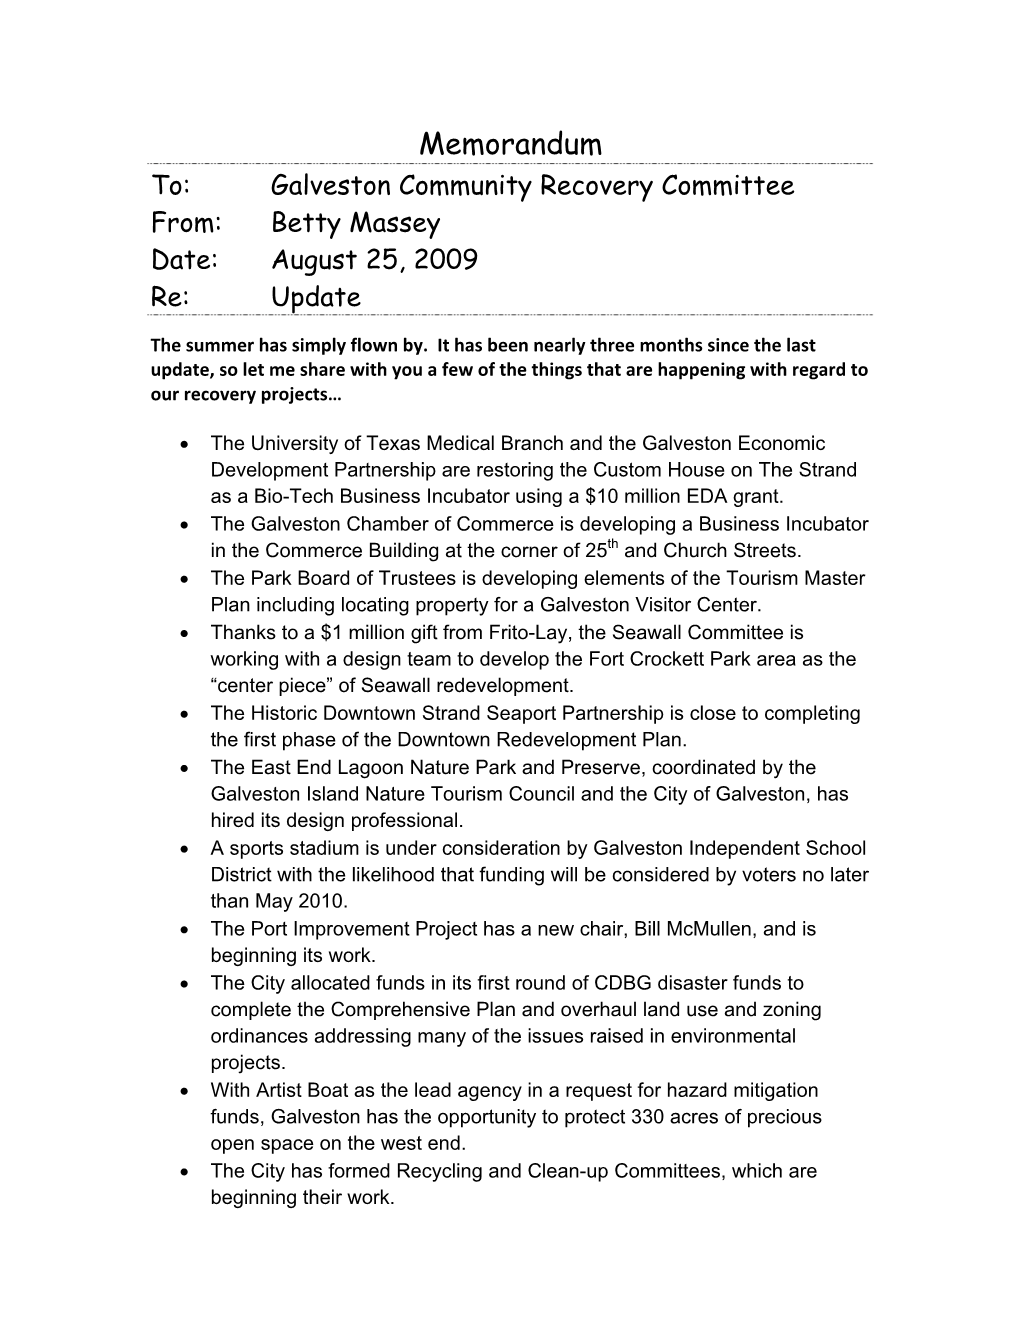 Memorandum To: Galveston Community Recovery Committee From: Betty Massey Date: August 25, 2009 Re: Update